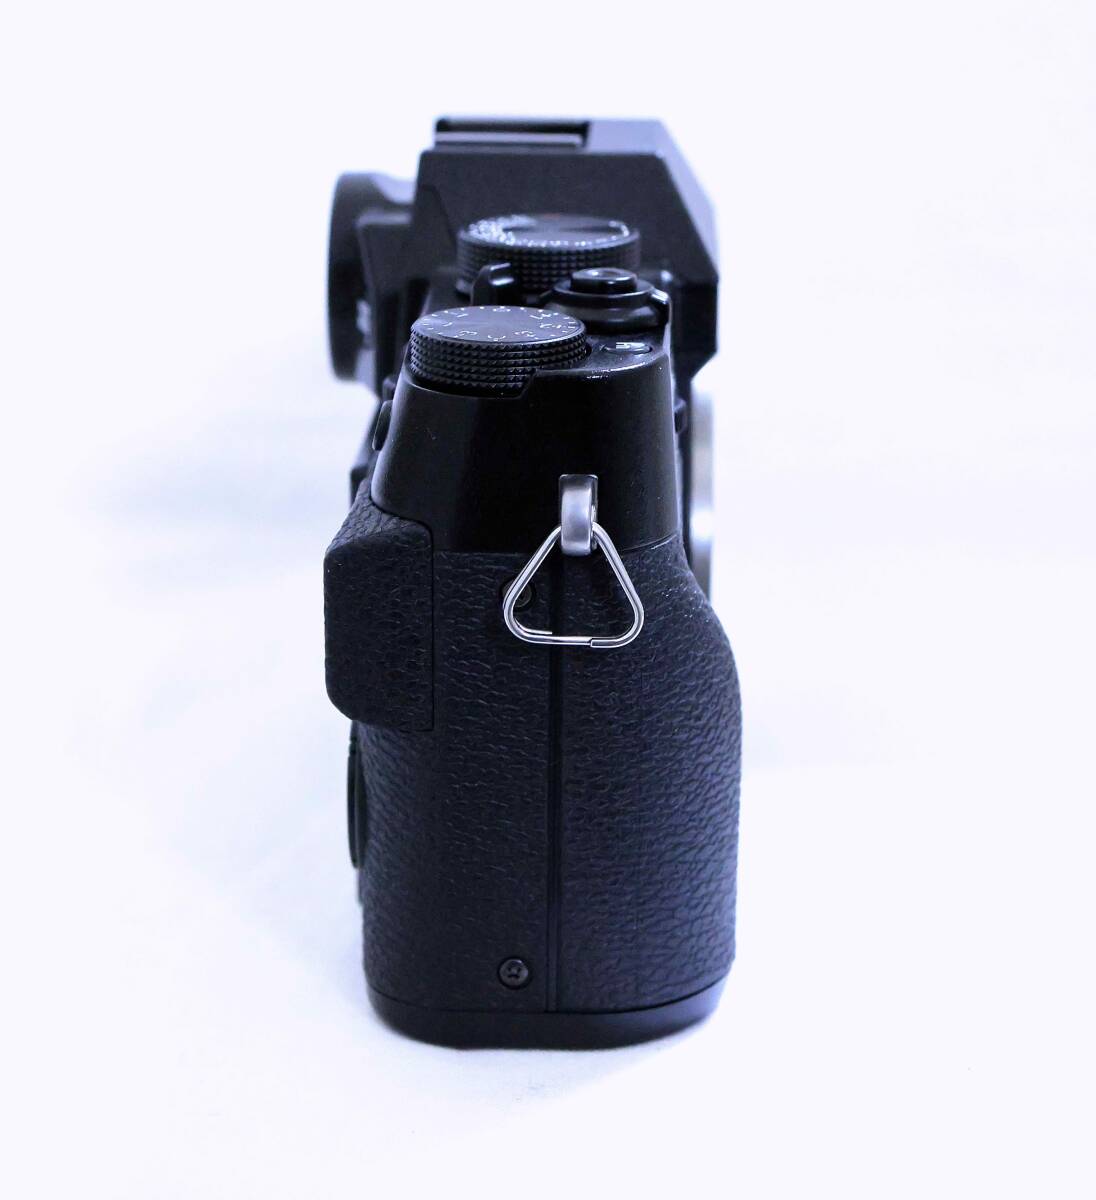 [ прекрасный товар ] Fuji Film FUJIFILM X-T20 корпус черный оригинальный заряжающийся аккумулятор NP-W126S* зарядное устройство для аккумулятора BC-W126* использование инструкция есть 